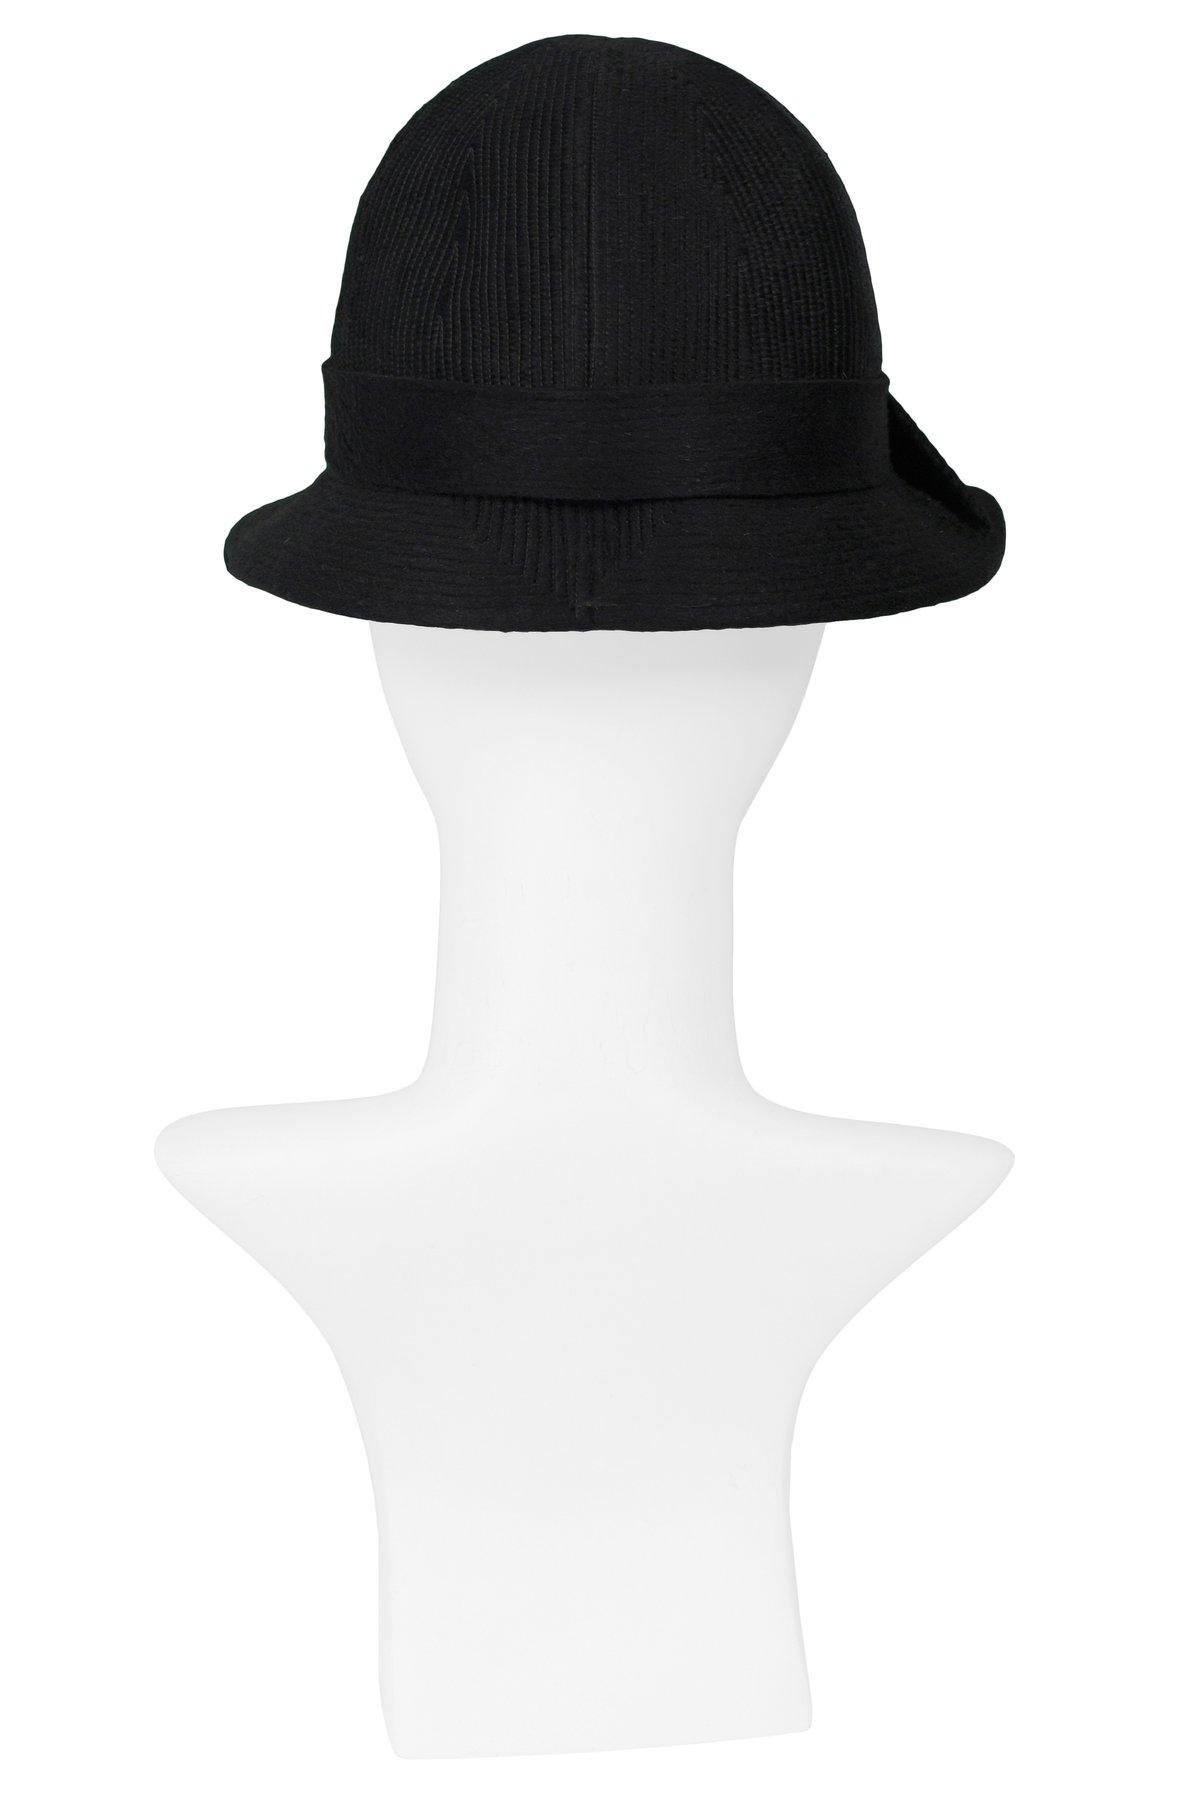 fancy black hats